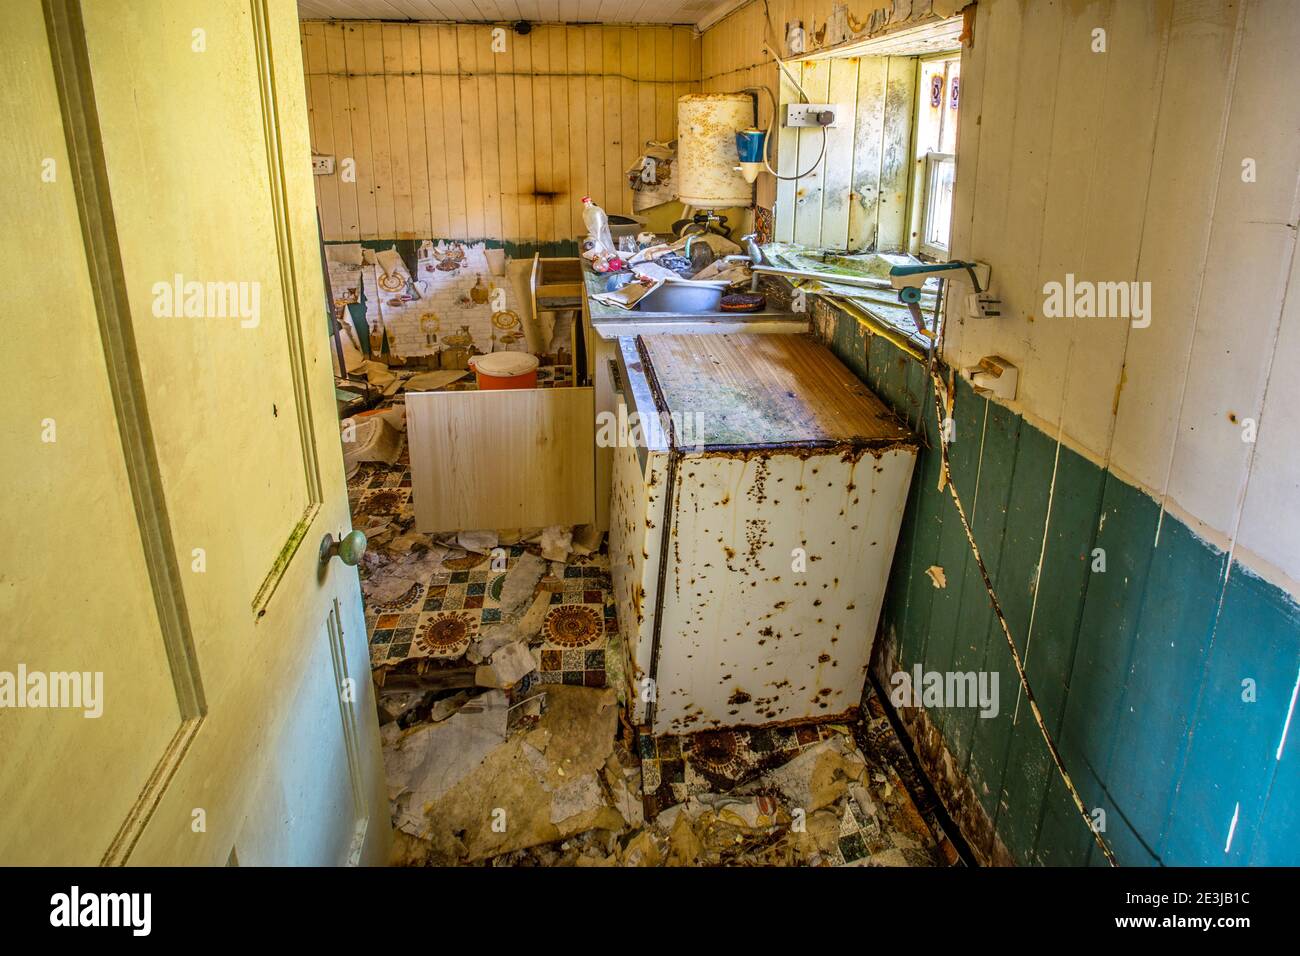 Eine verlassene verlassene Küche in einem alten Häuschen. Stockfoto